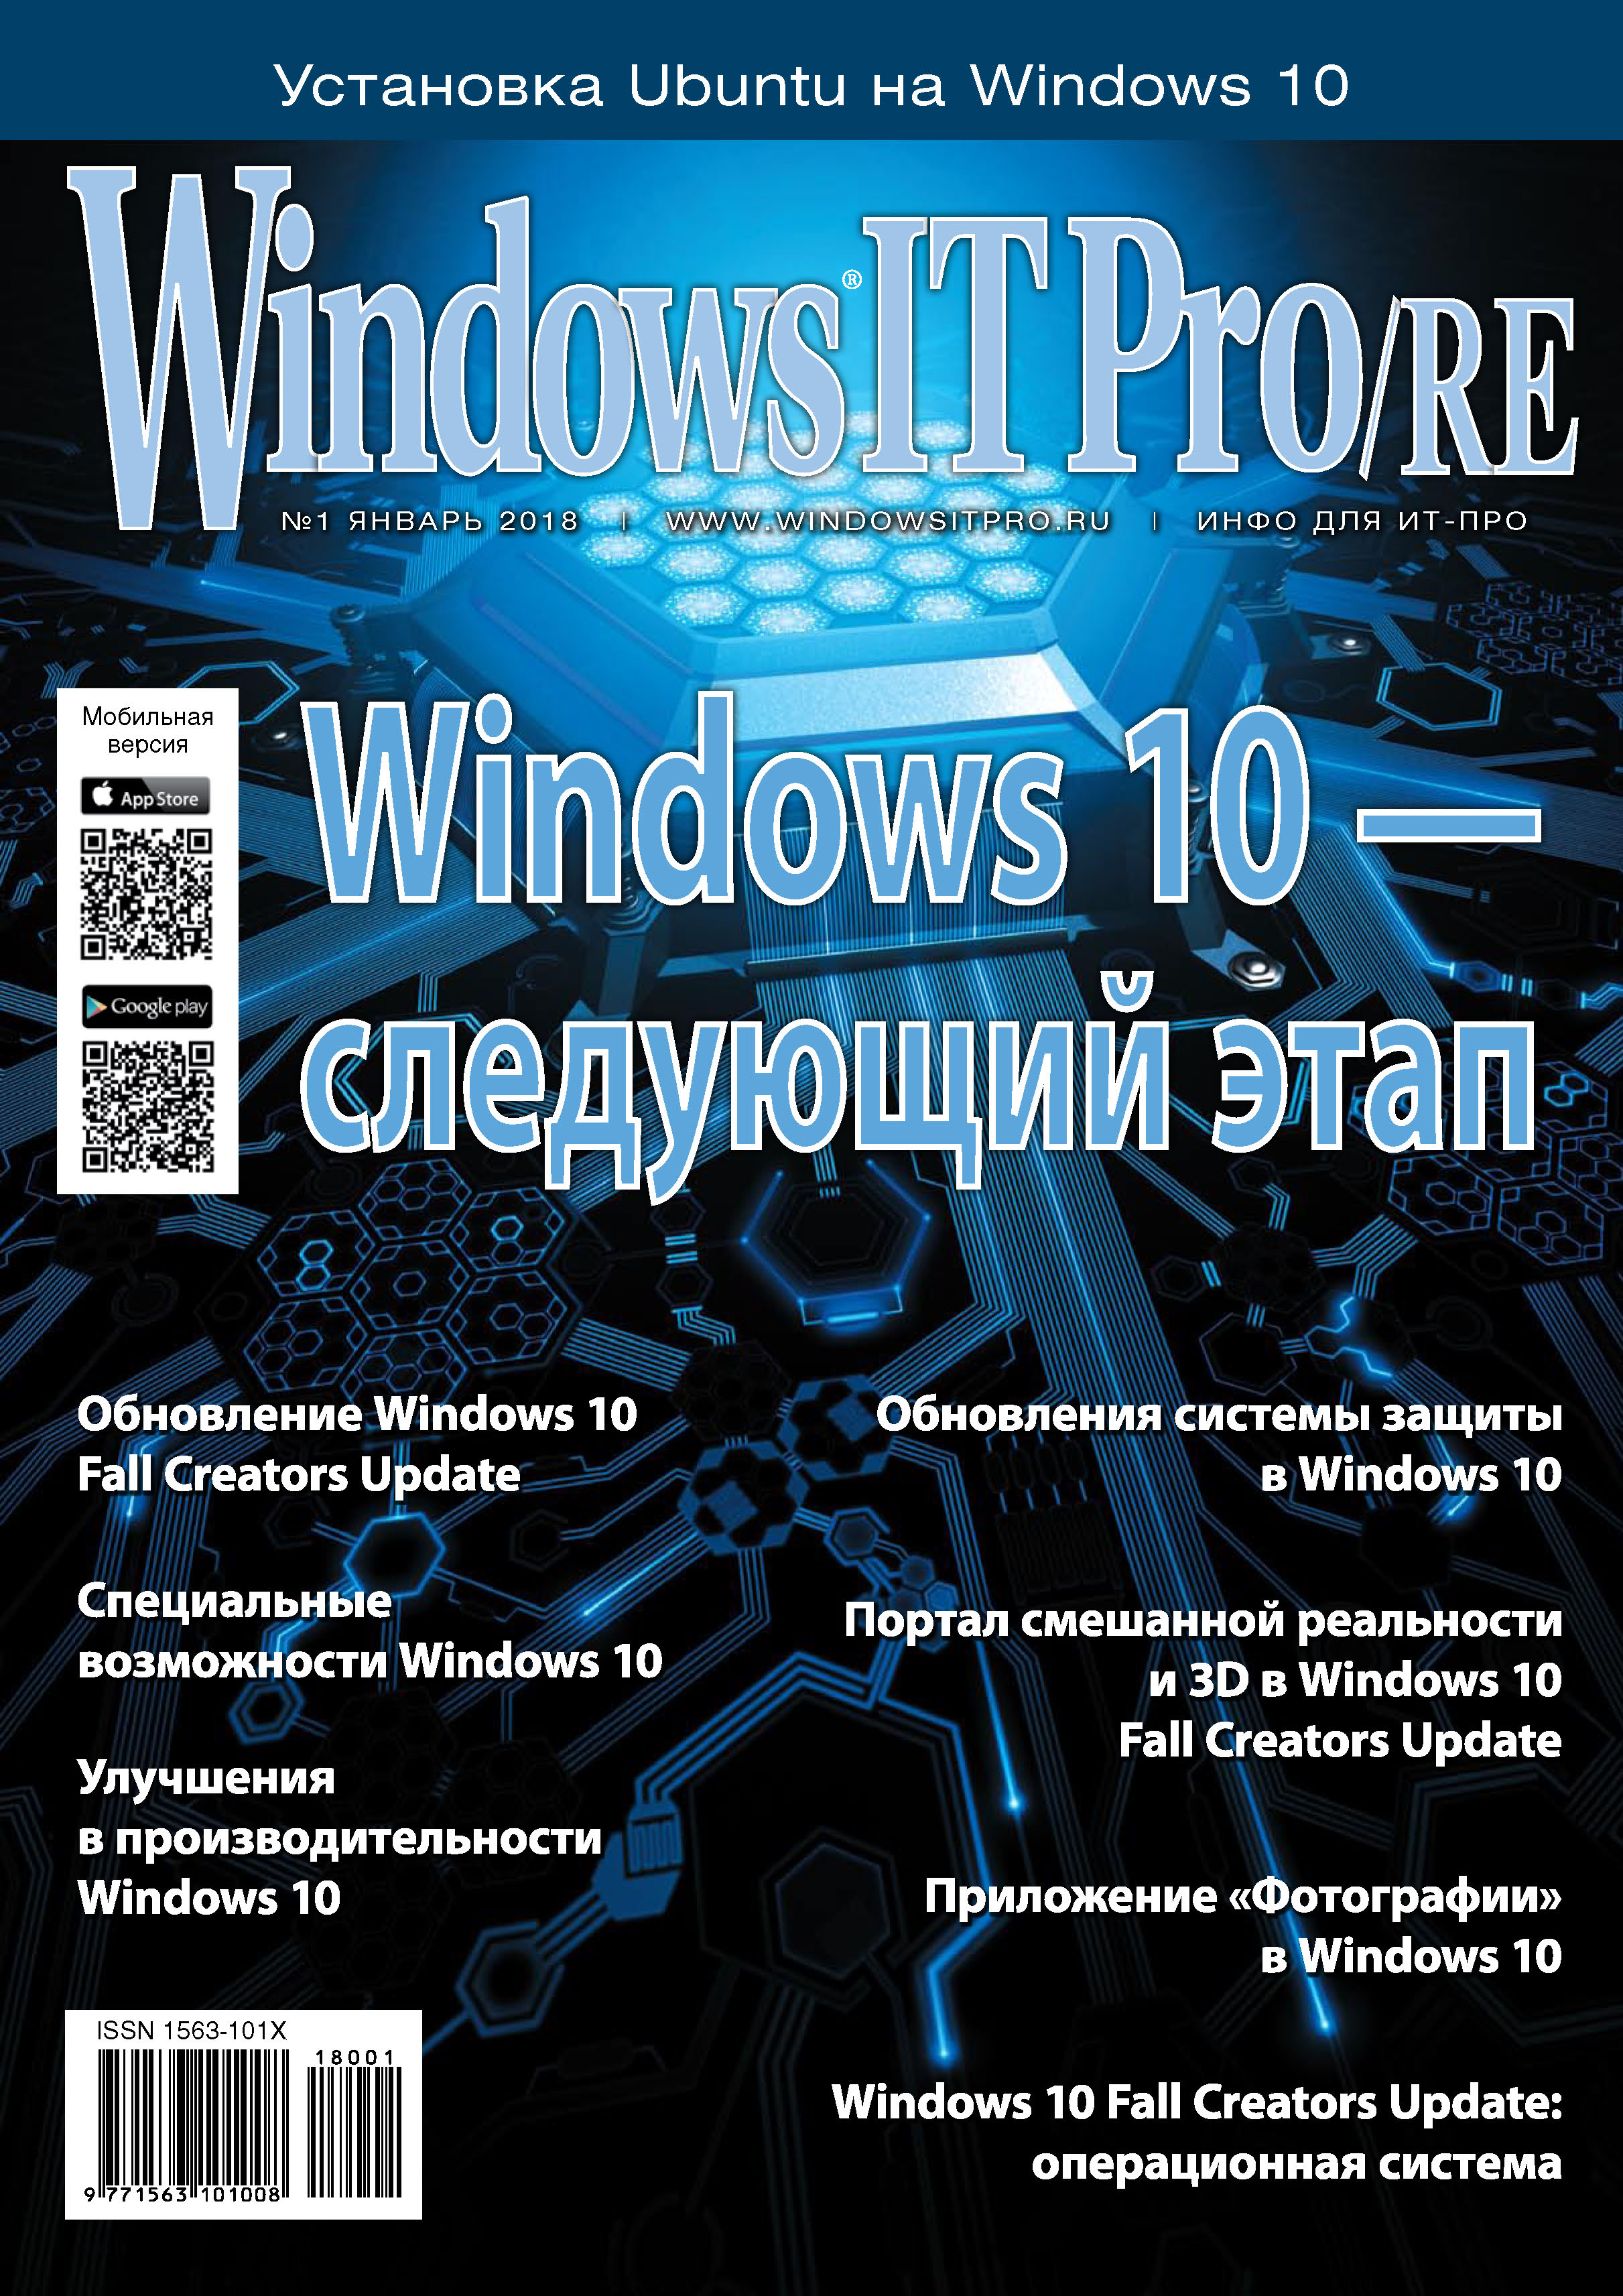 Книга Windows IT Pro 2018 Windows IT Pro/RE №01/2018 созданная Открытые системы может относится к жанру компьютерные журналы, ОС и сети, программы. Стоимость электронной книги Windows IT Pro/RE №01/2018 с идентификатором 28958632 составляет 484.00 руб.